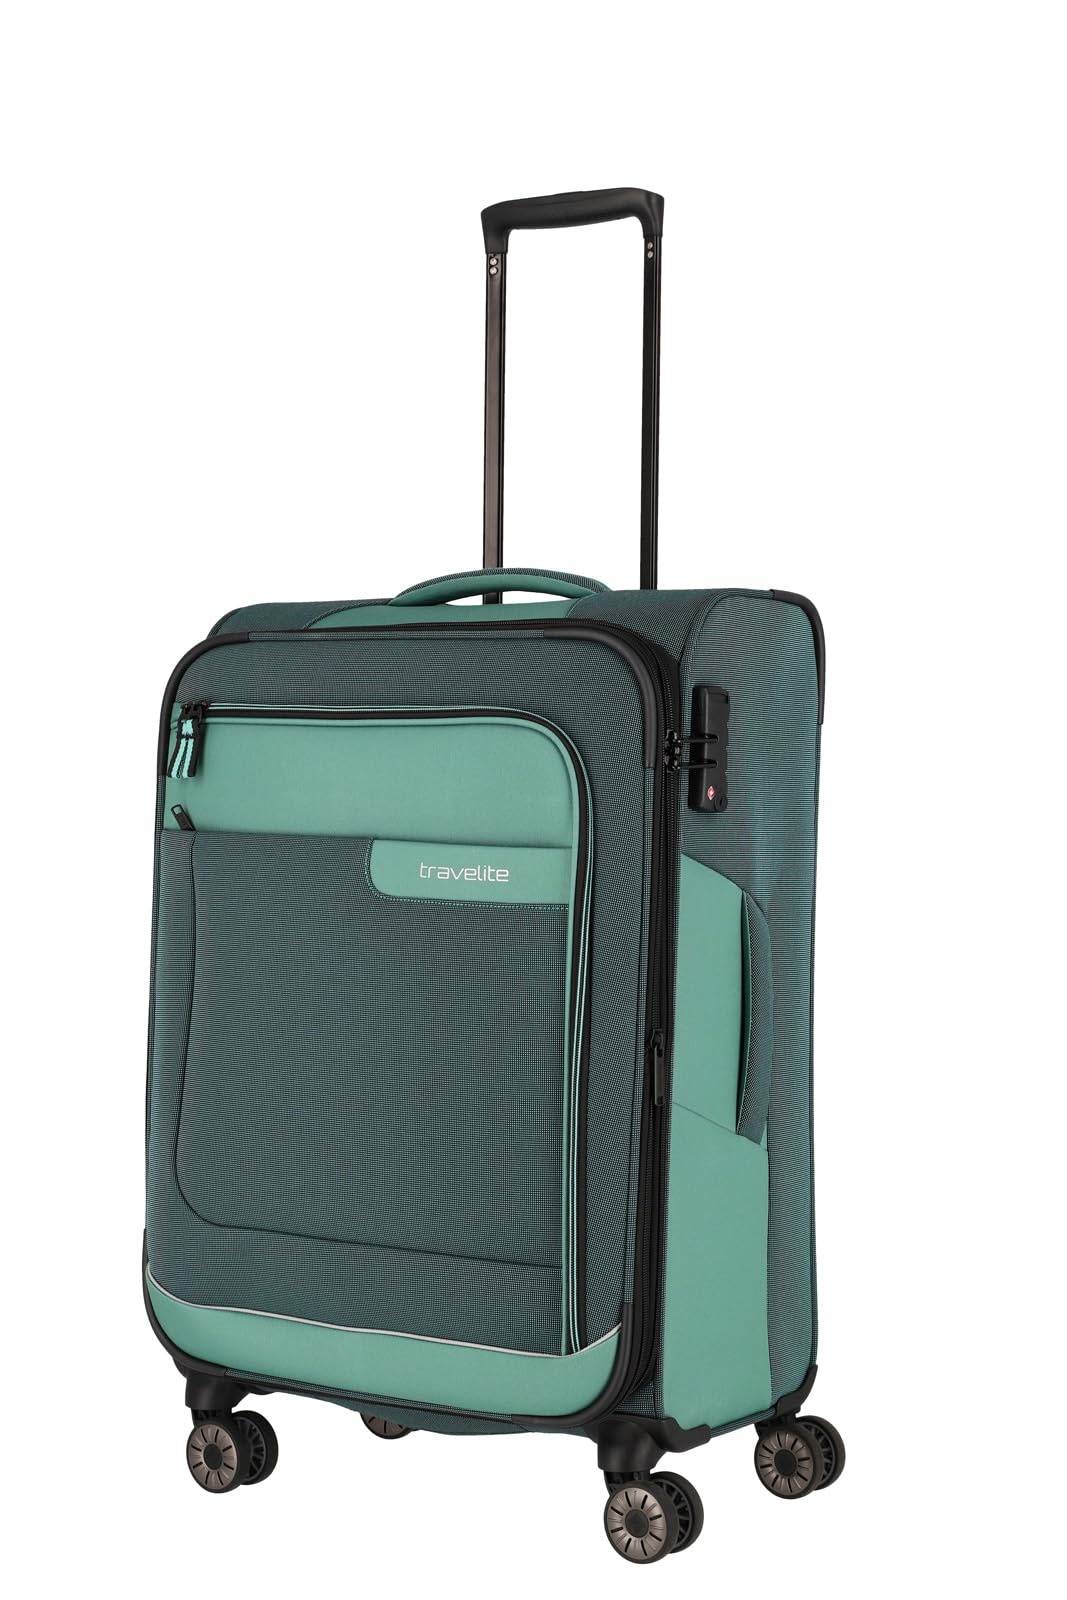 travelite Reisekoffer mittelgroß, nachhaltig, 4 Rollen, VIIA, Weichgepäck Trolley aus recyceltem Material, TSA Schloss, 67 cm, 70 - 80 Liter